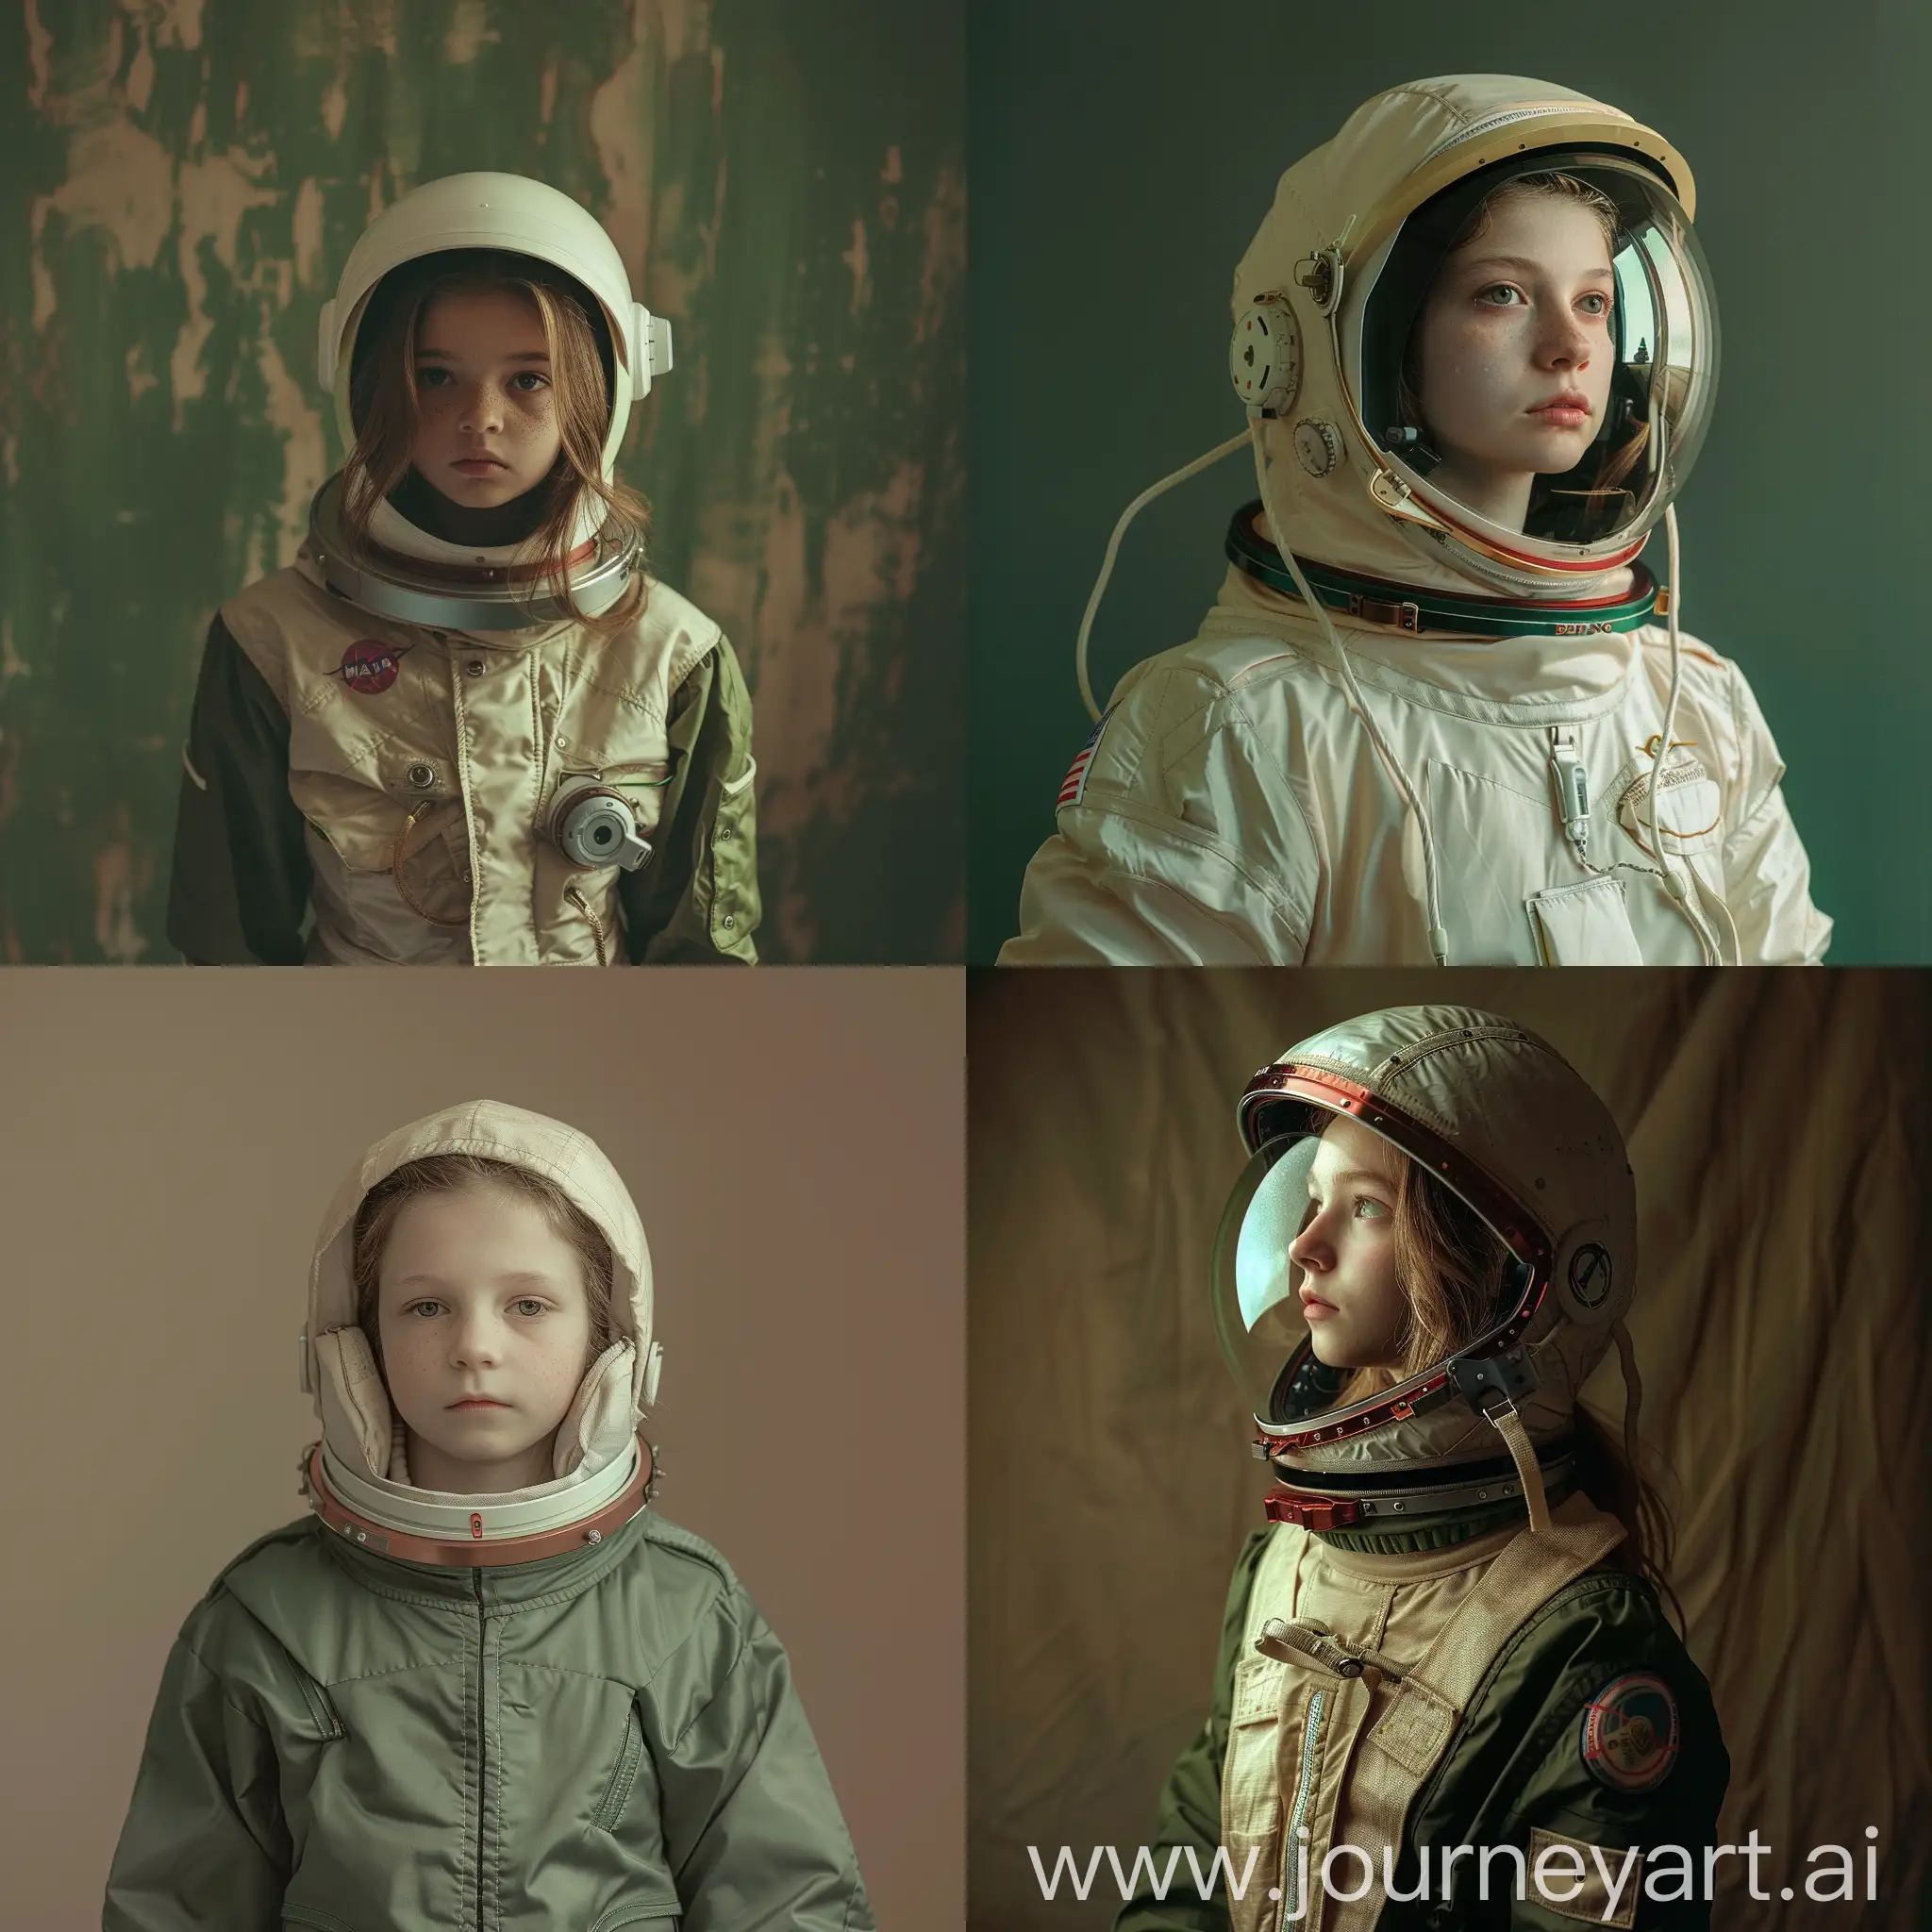 穿着宇航服的女孩，当代现实主义肖像摄影风格，深绿色和浅米色，迷人的纪实照片